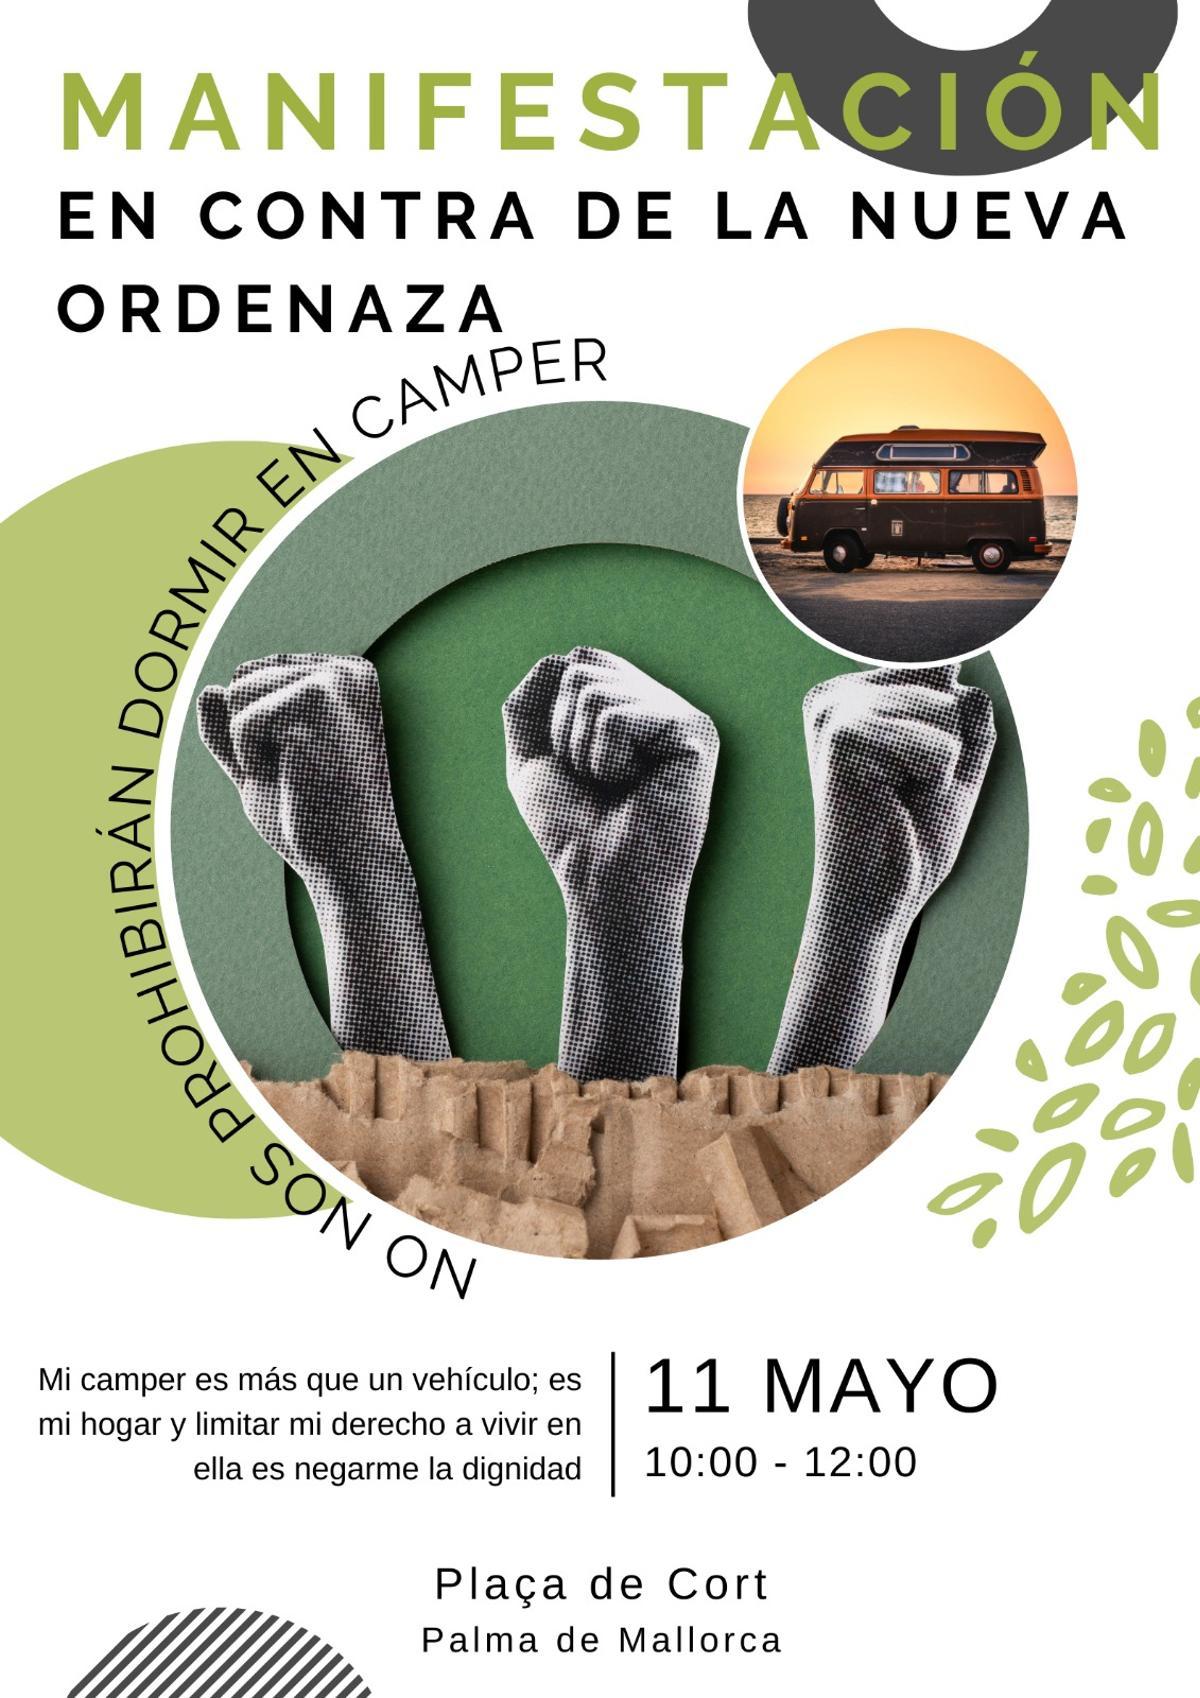 Los caravanistas se manifestarán el próximo día 11 contra la nueva ordenanza cívica de Palma